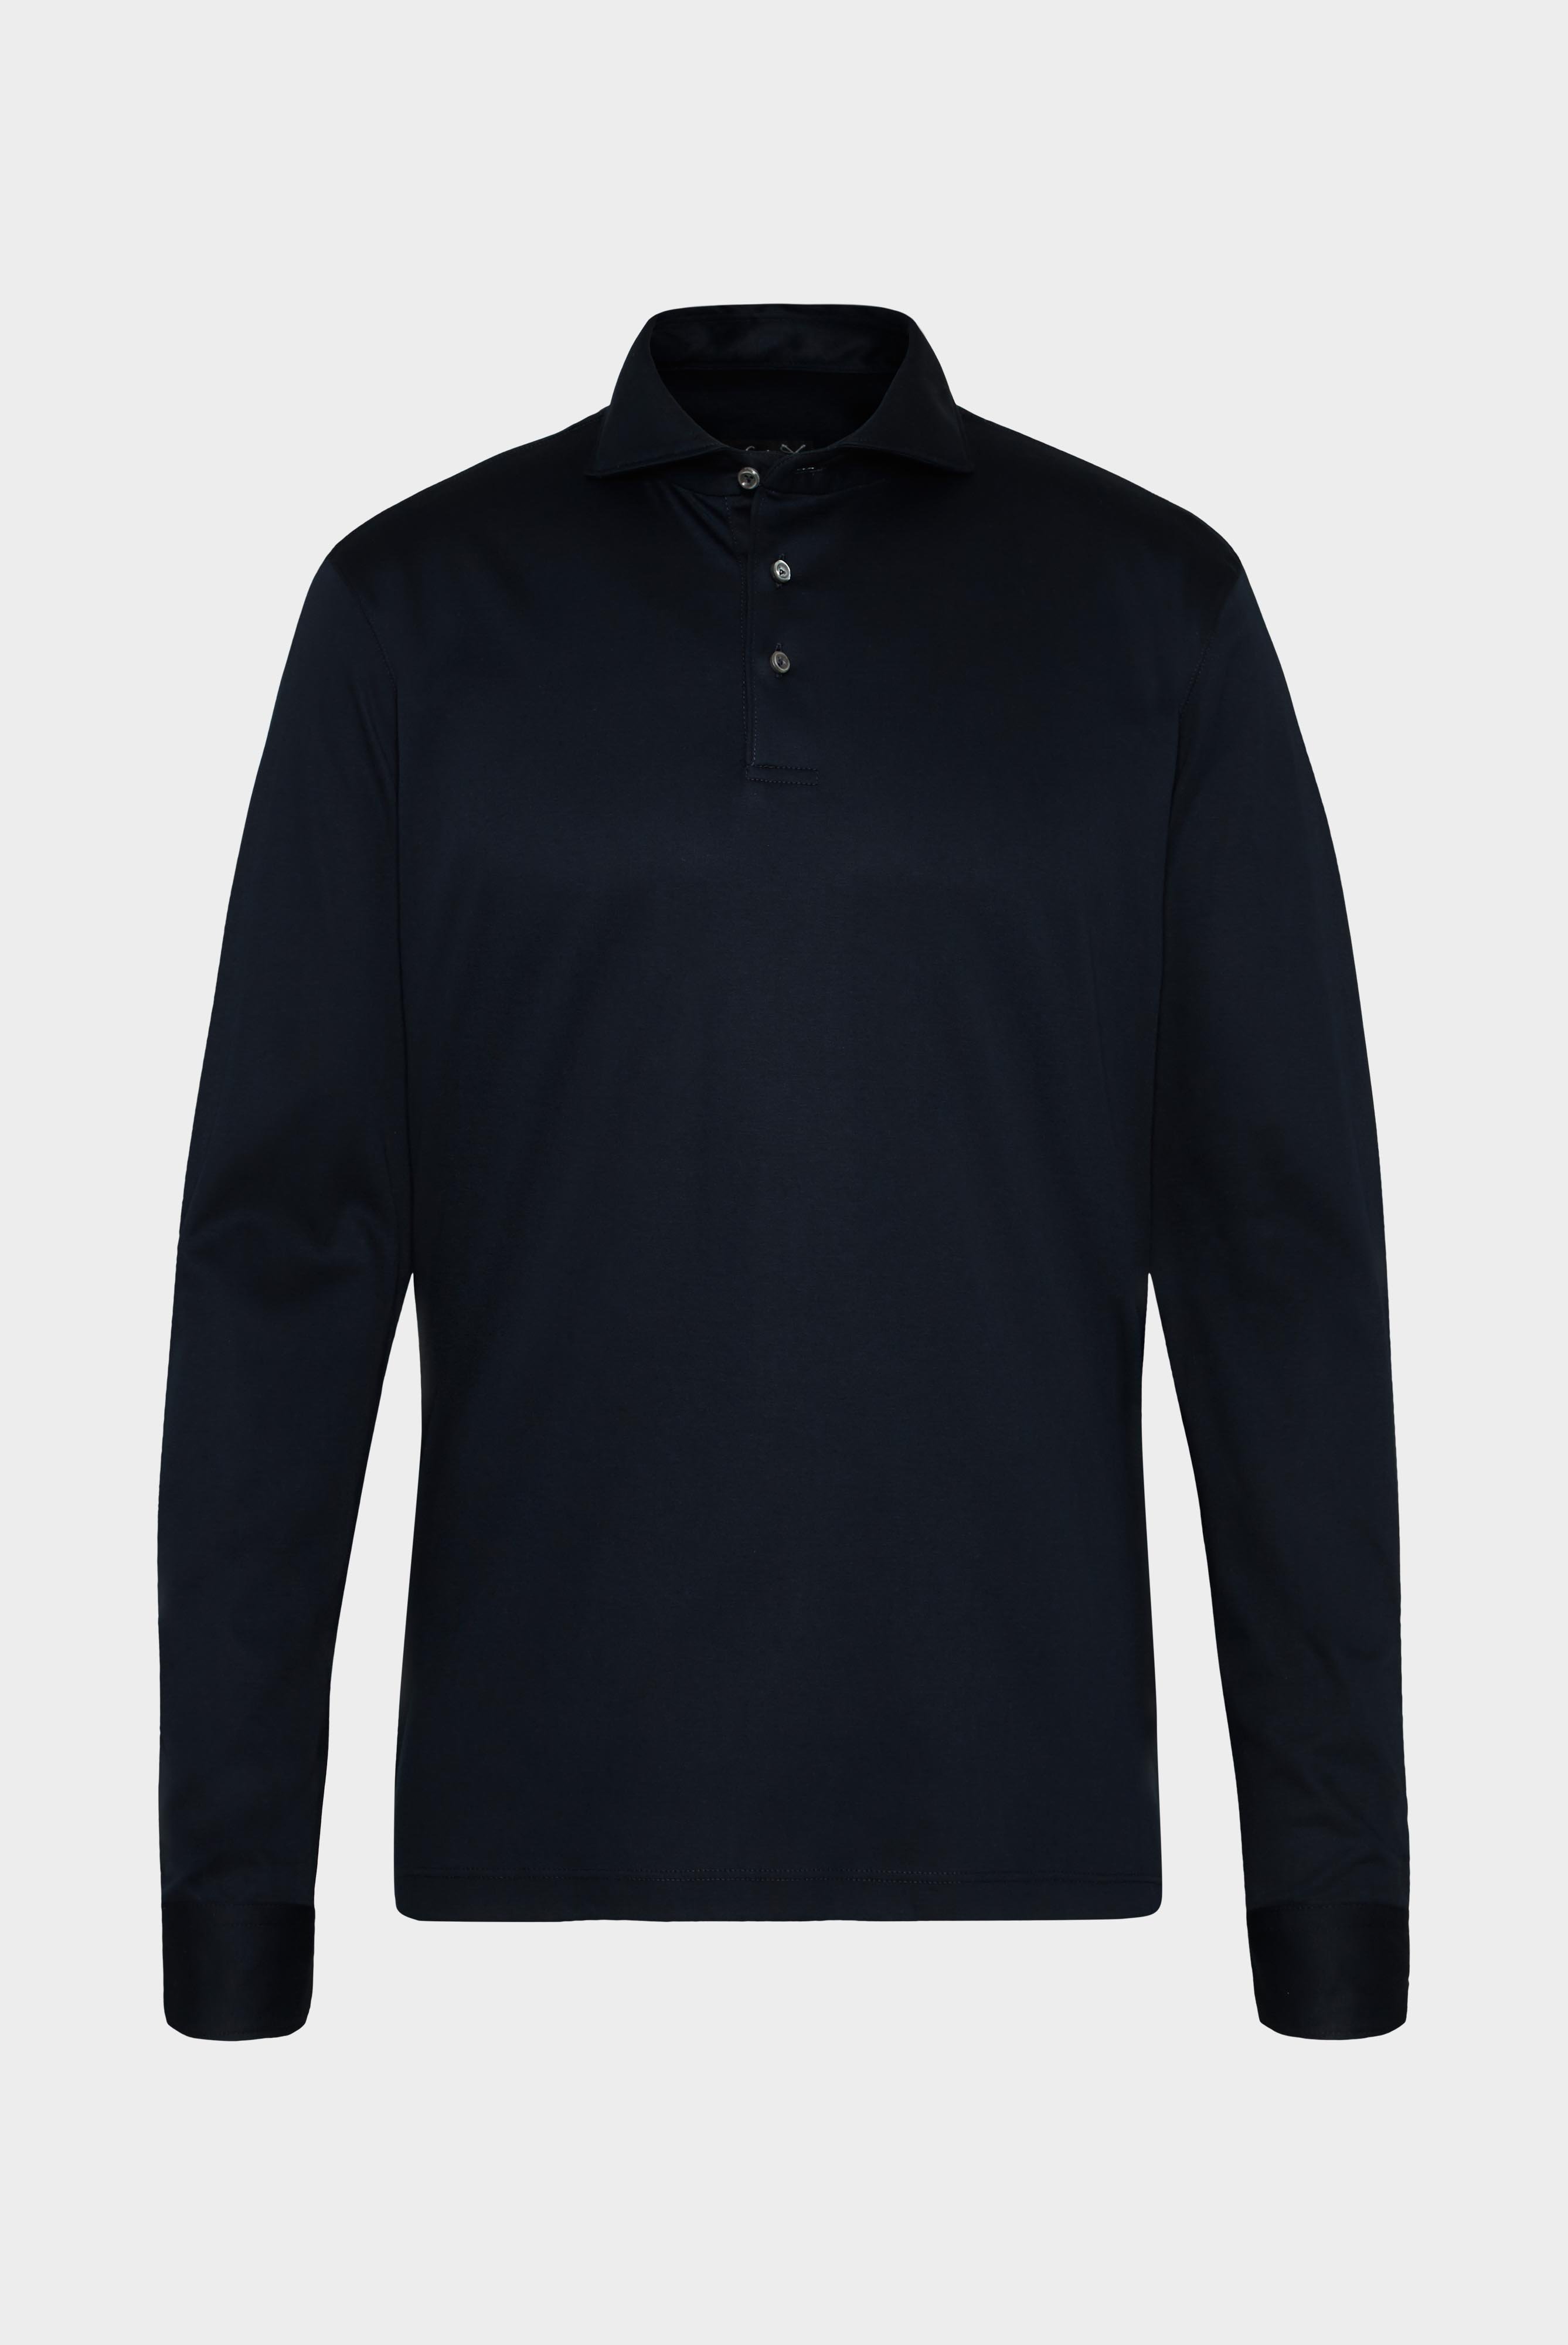 Poloshirts+Langarm Jersey Poloshirt+20.1726.UC.180031.790.XS